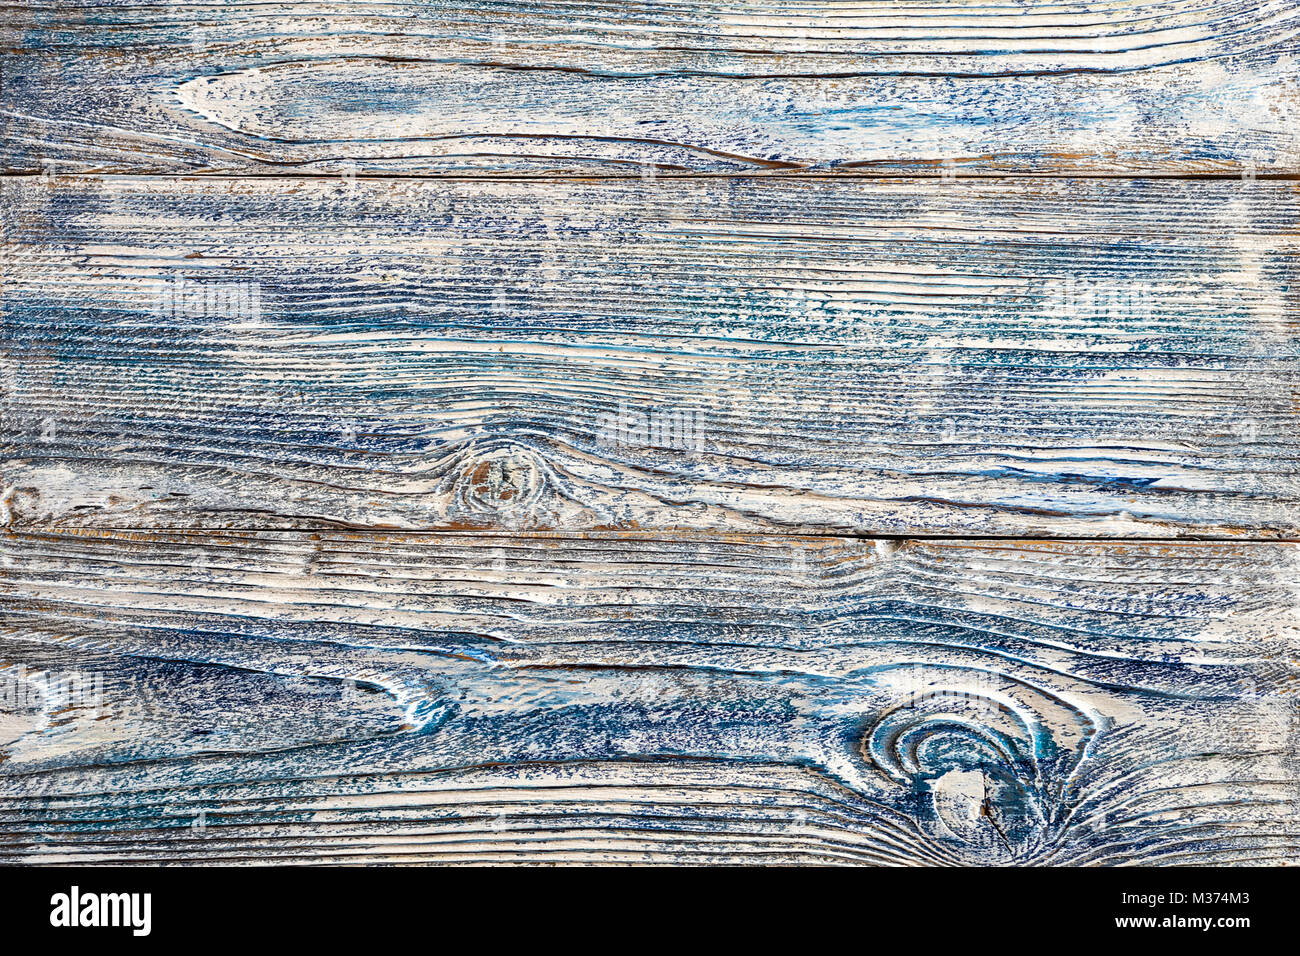 Weiß Blau Farbe auf altem Holz Bohlen Holz getragen mehrere Schichten von gerissenen lackiert schäbig Hintergrund Textur gemischt Stockfoto